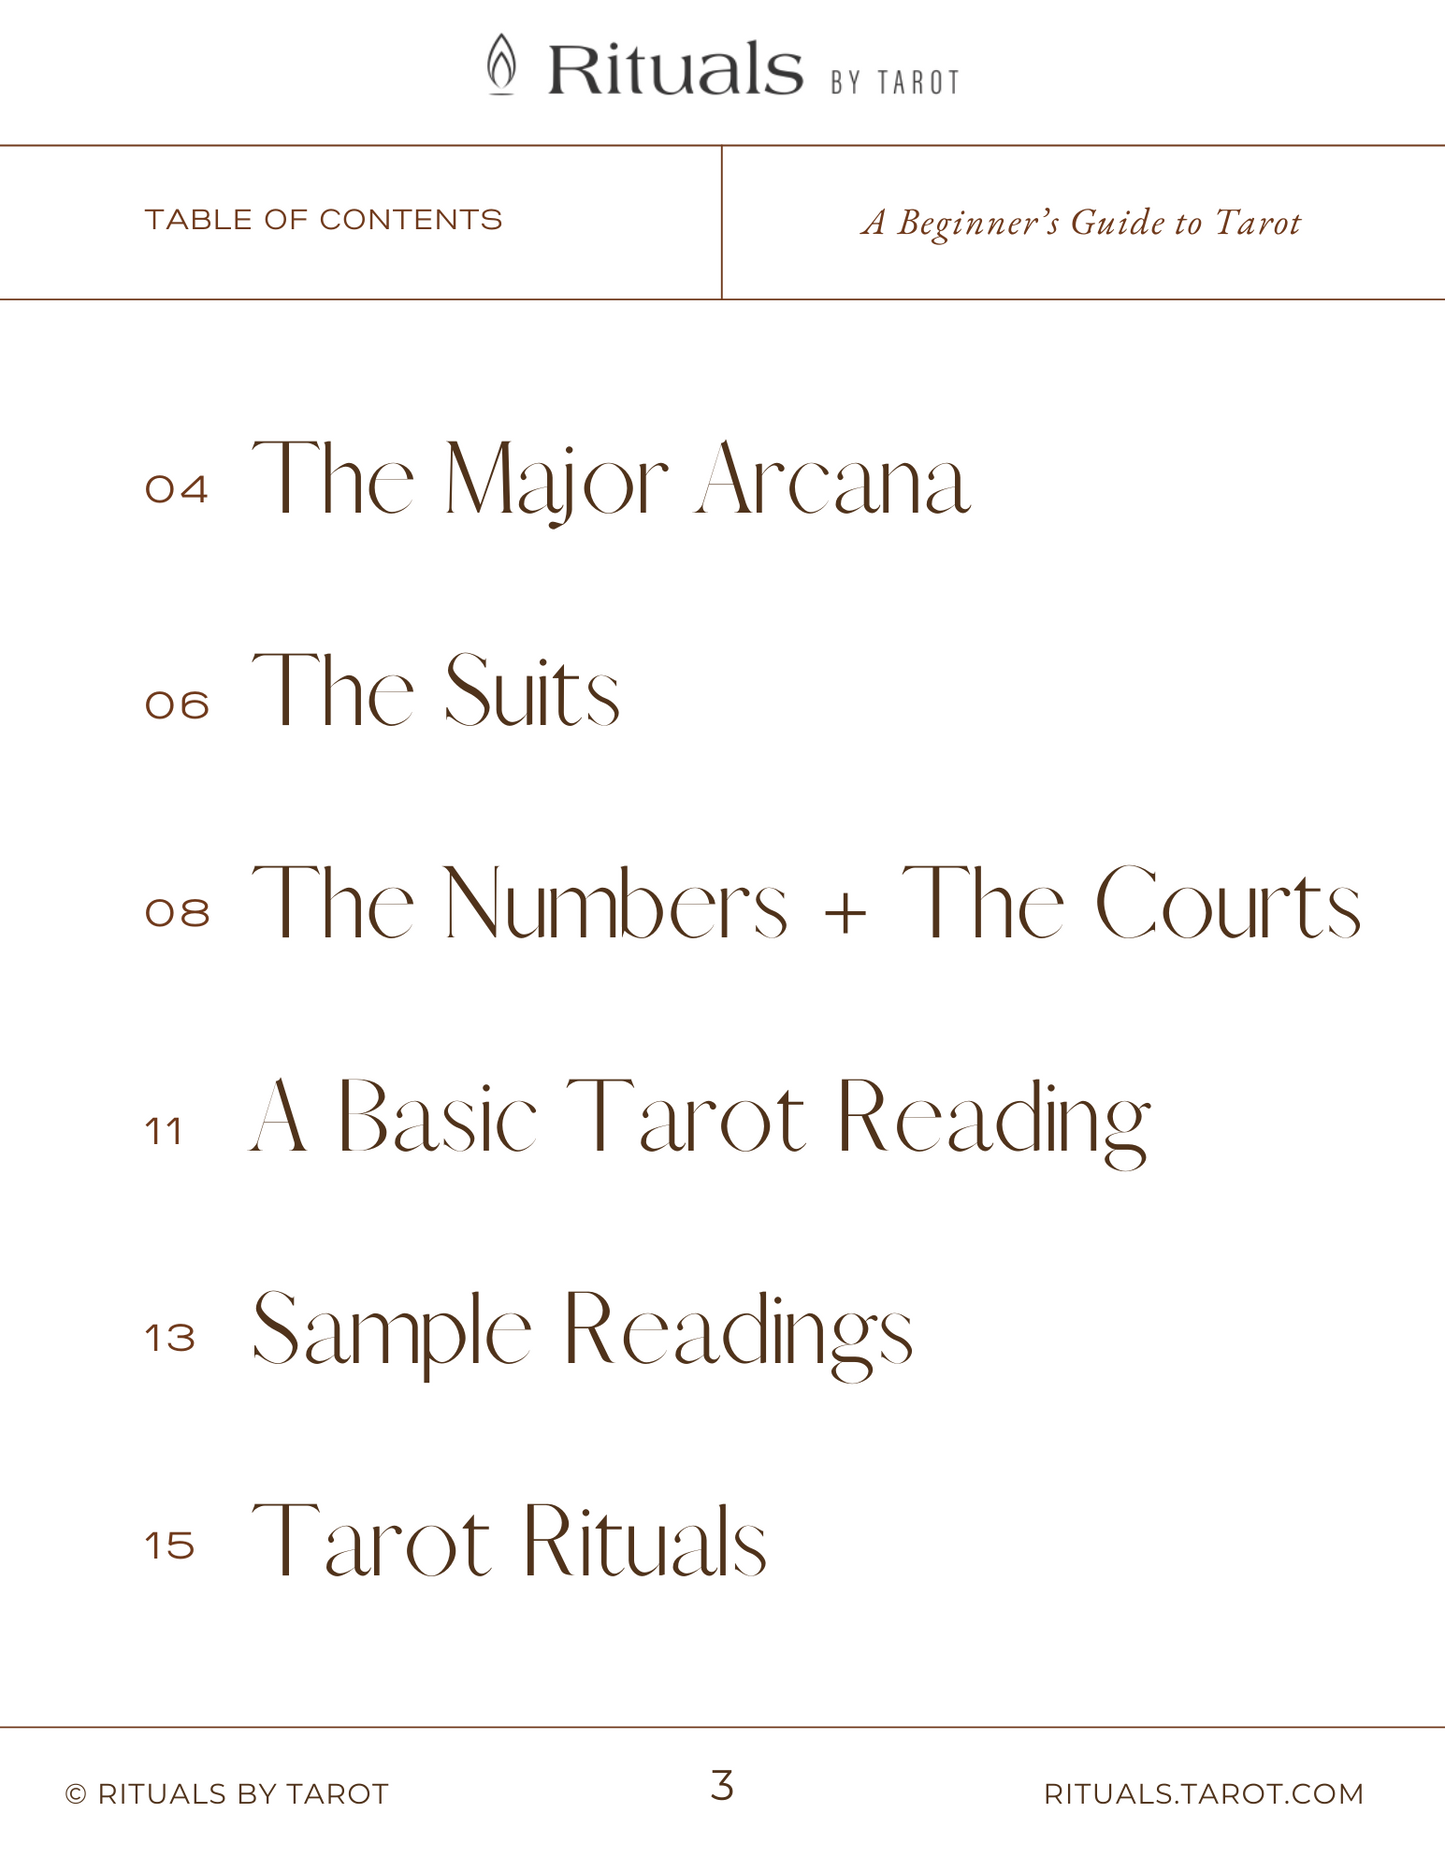 A Beginner's Guide to Tarot Workbook